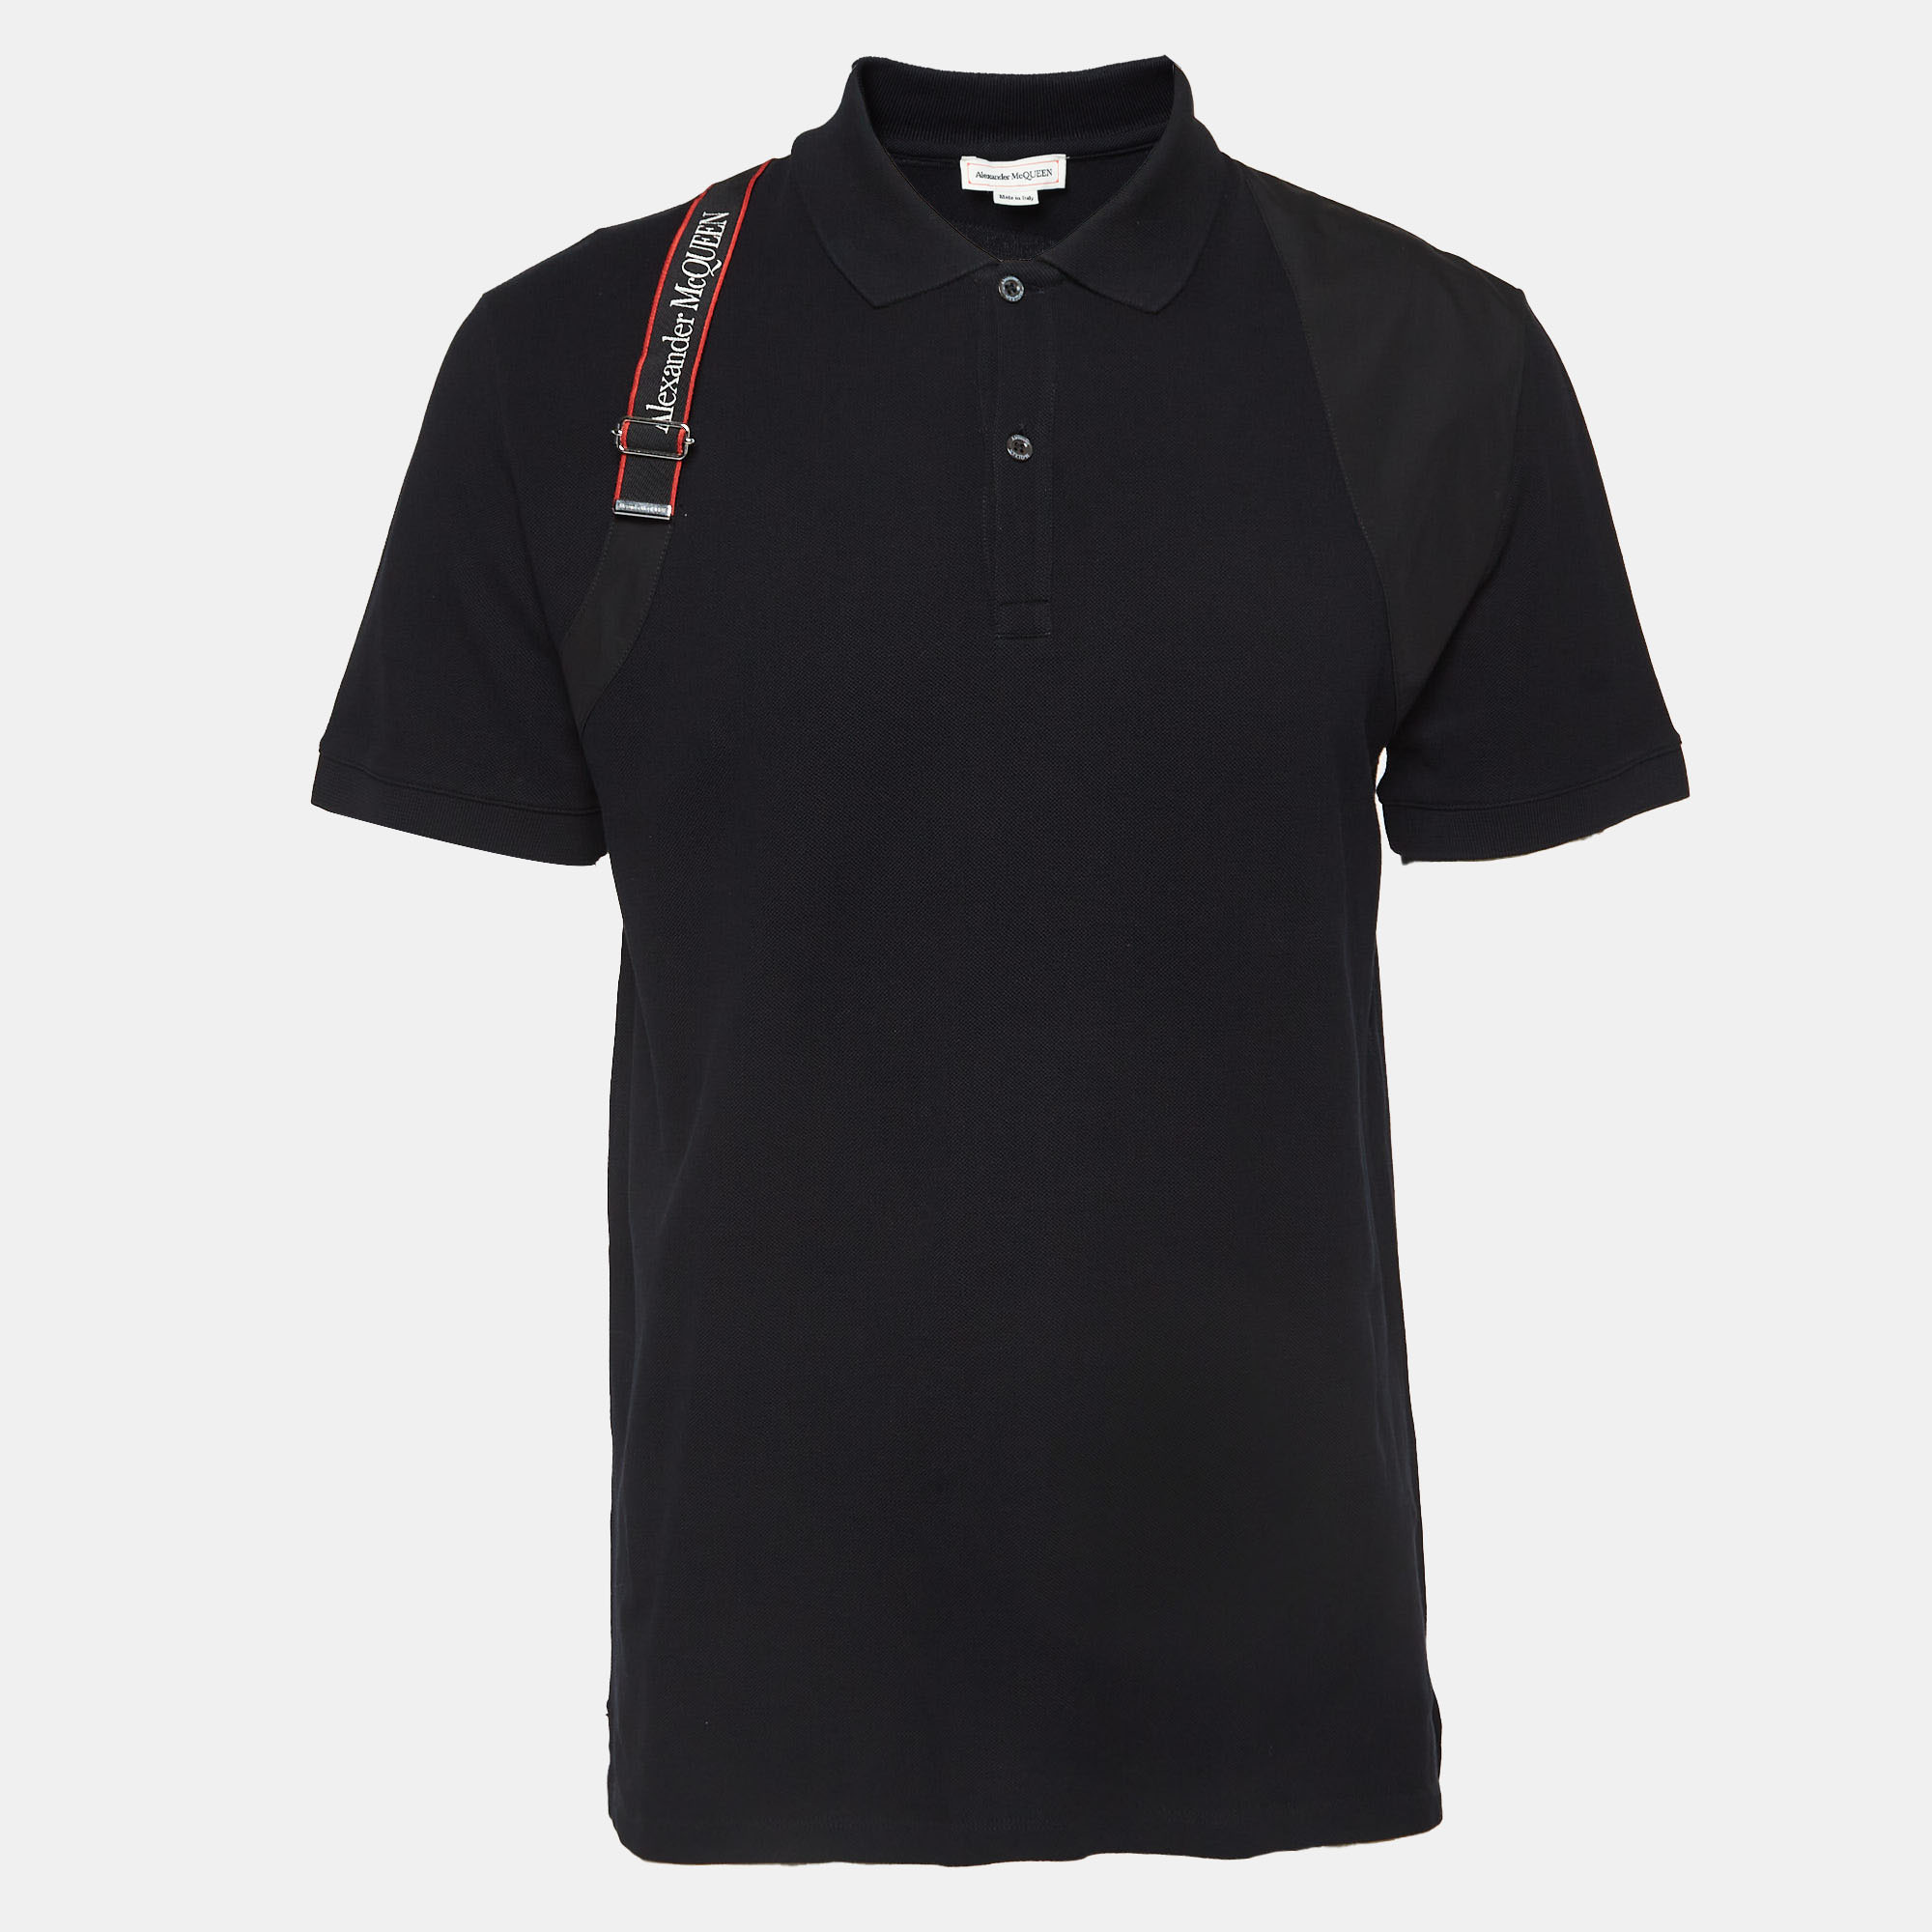 Alexander mcqueen black logo harness cotton pique polo t-shirt xl